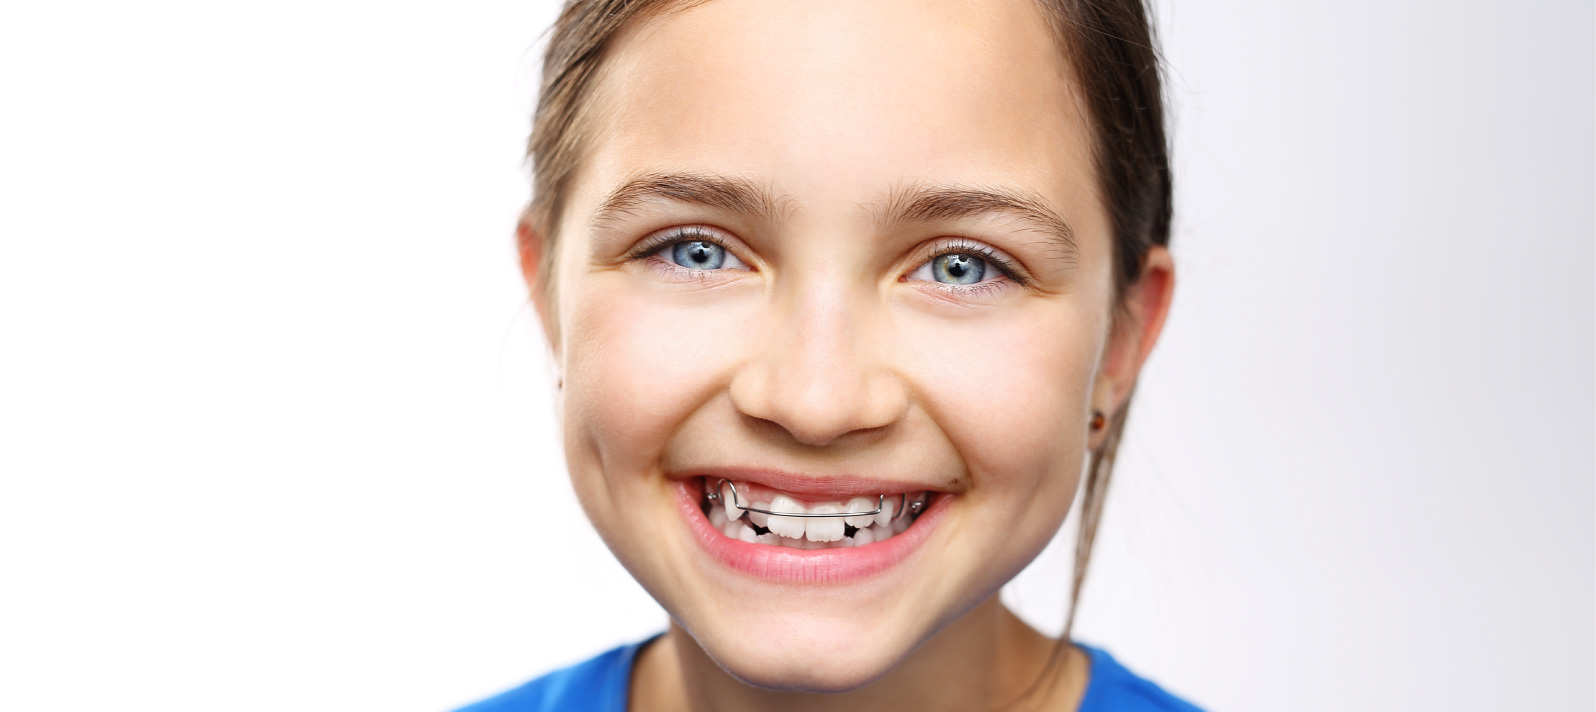 La utilización de ortodoncia interceptiva para acabar con los problemas de mordida imperfecta